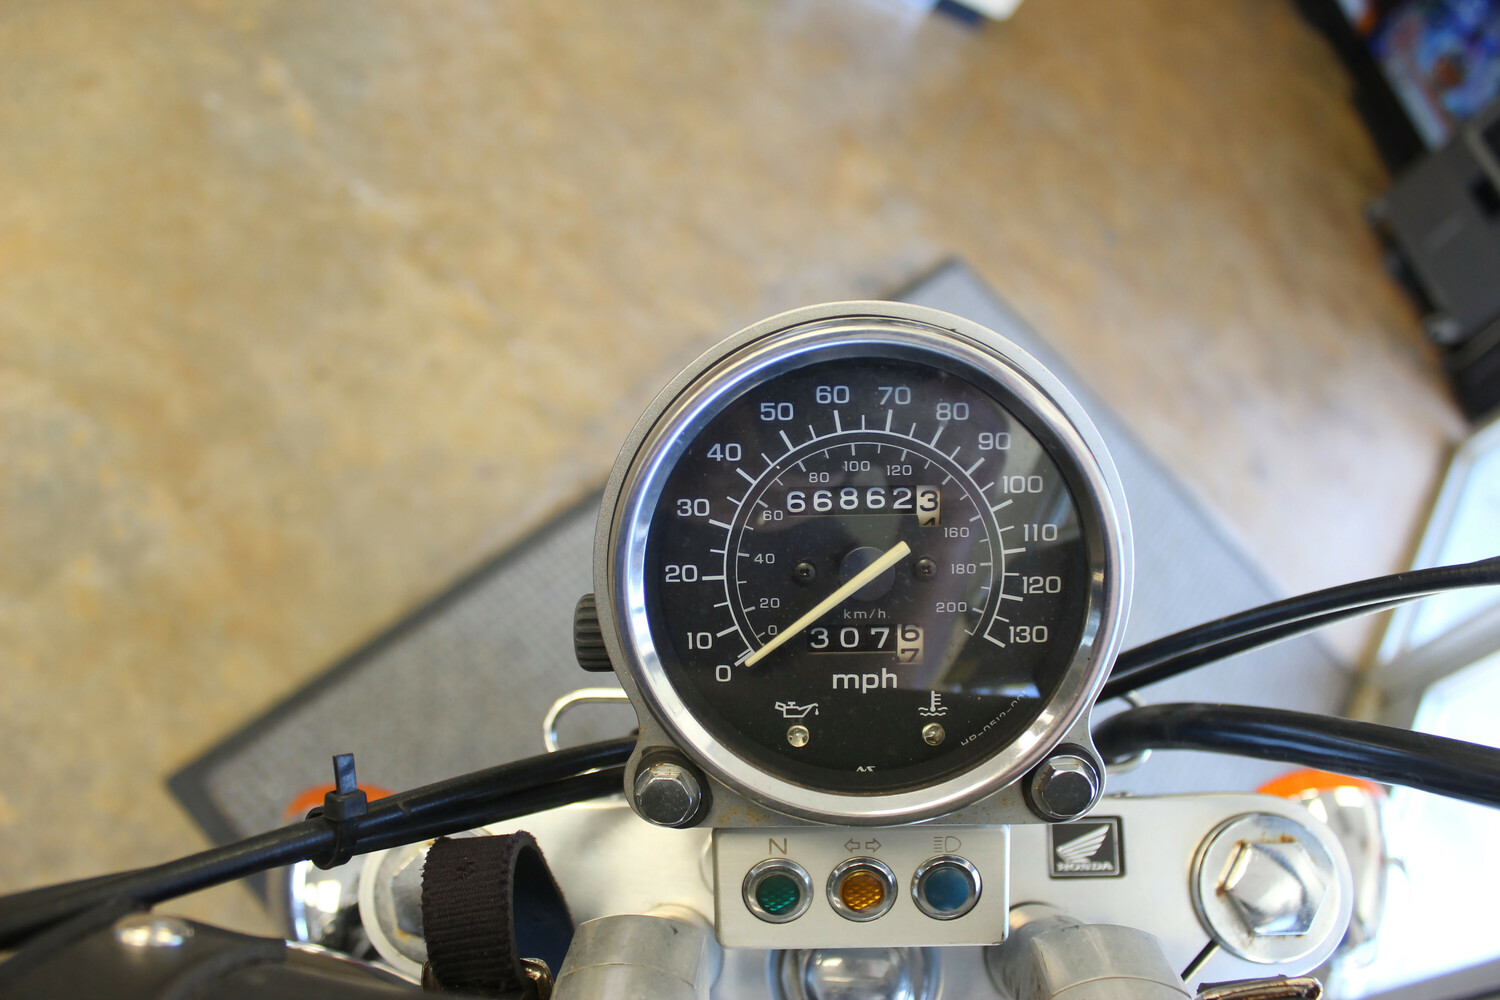 2004 HONDA SHADOW VT1100 MOTORCYCLE